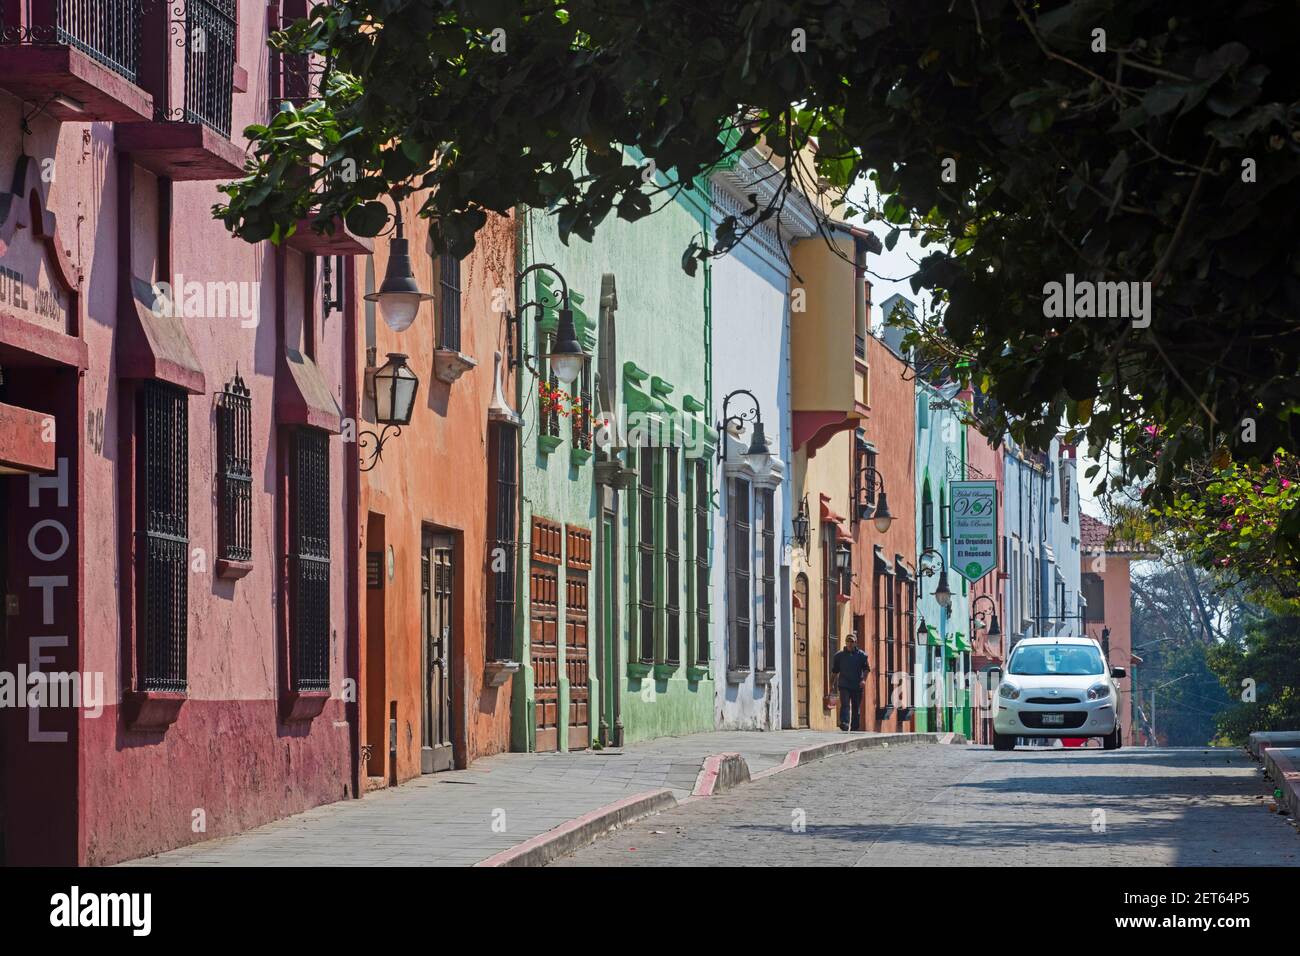 Straße mit pastellfarbenen Kolonialhäusern und Hotels in der Stadt Cuernavaca, Bundesstaat Morelos, Mexiko Stockfoto